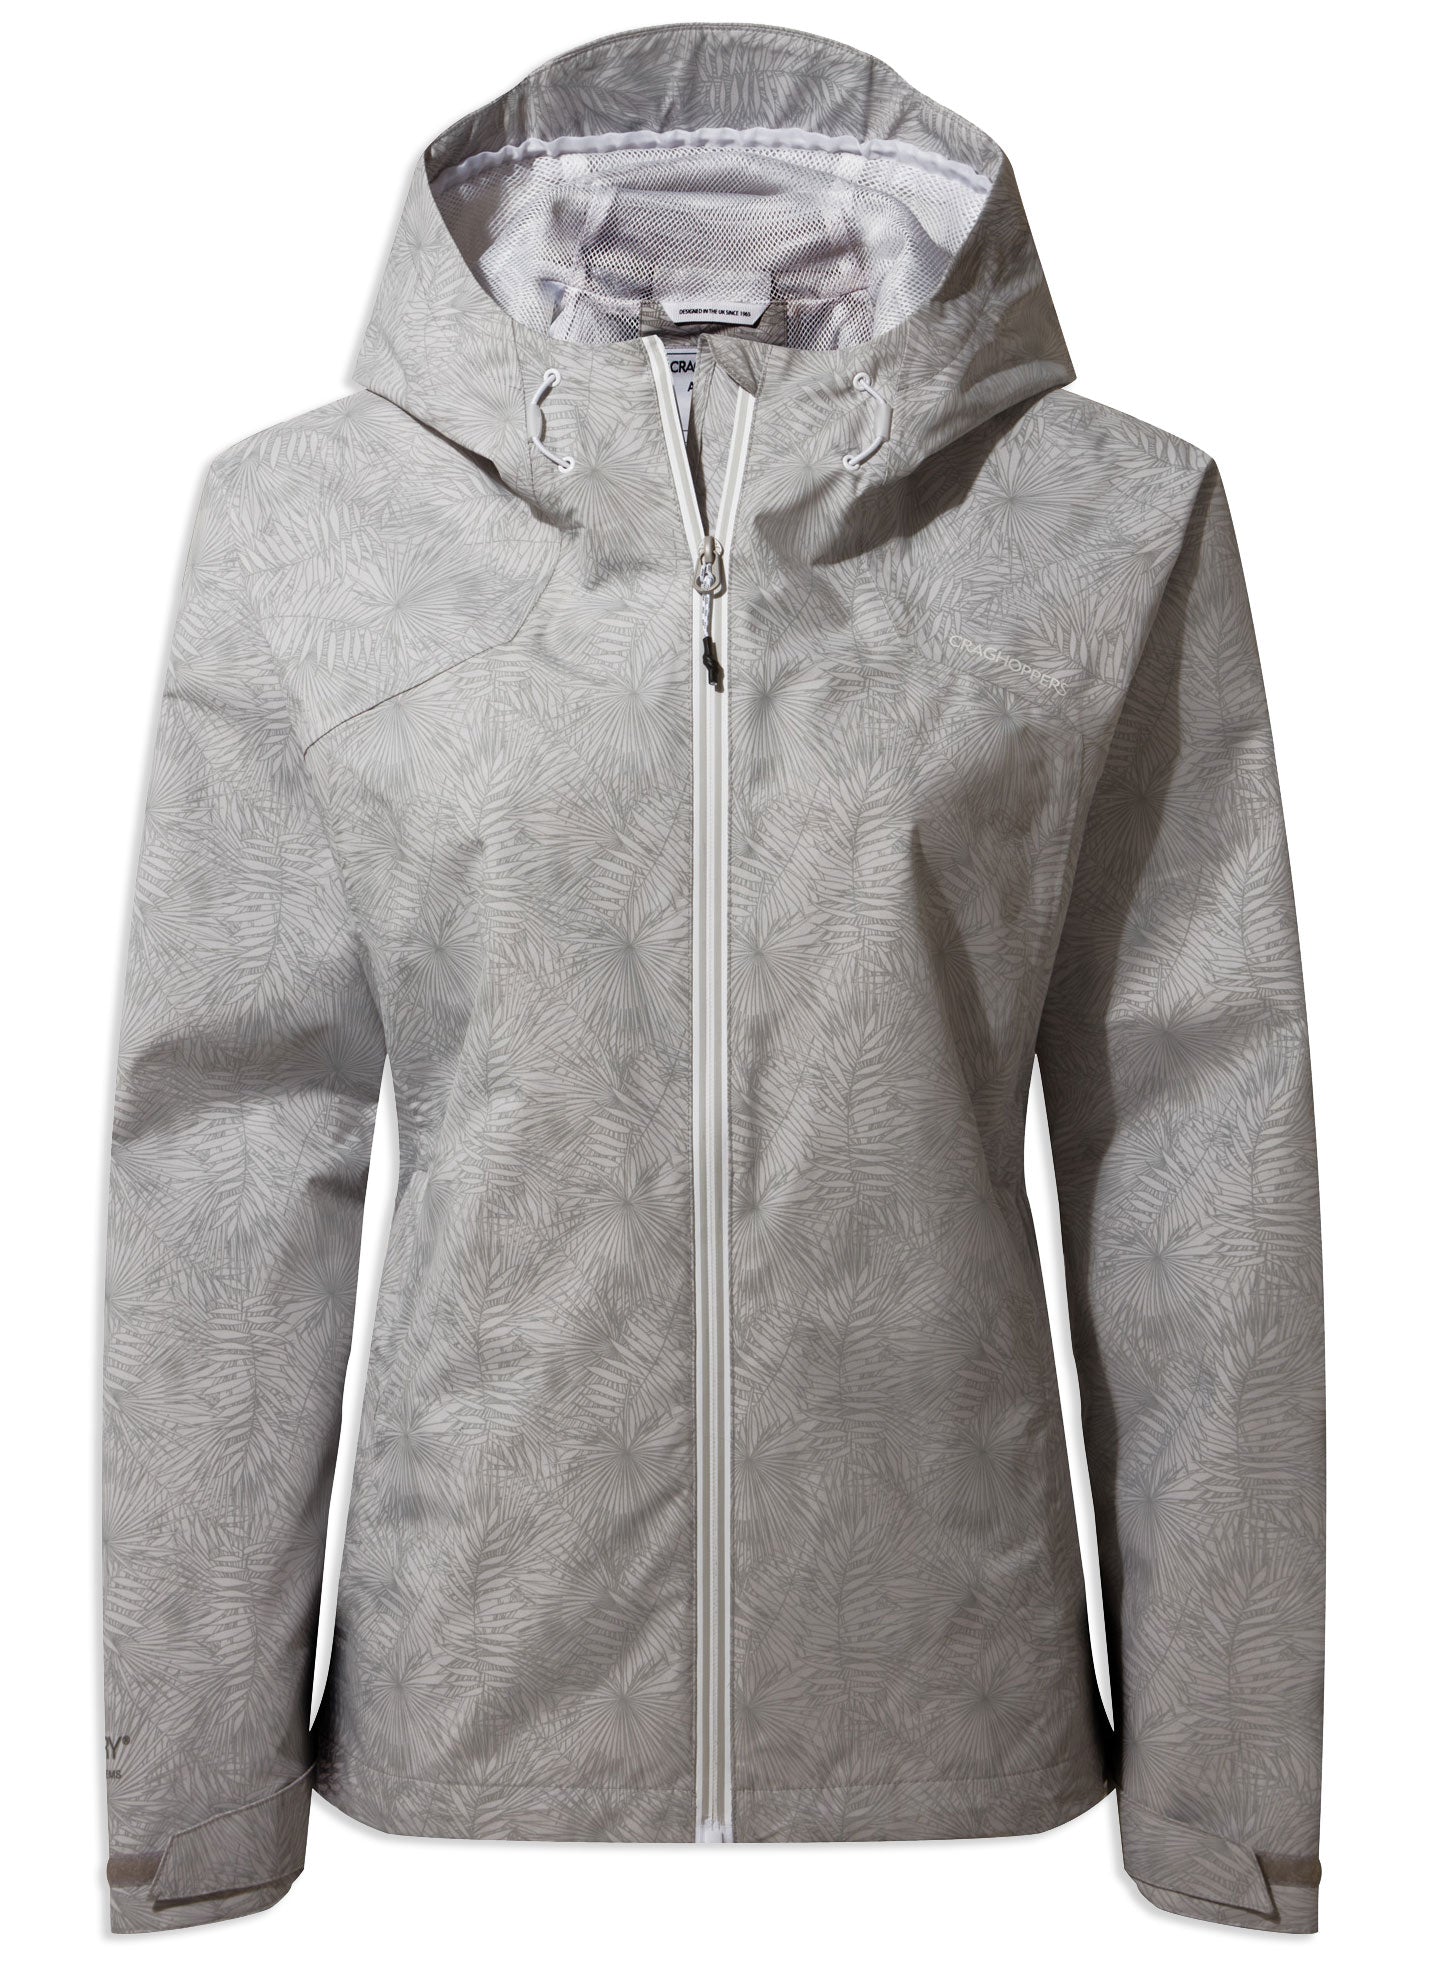 Craghoppers Toscana Waterproof Jacket | Dove Grey Print